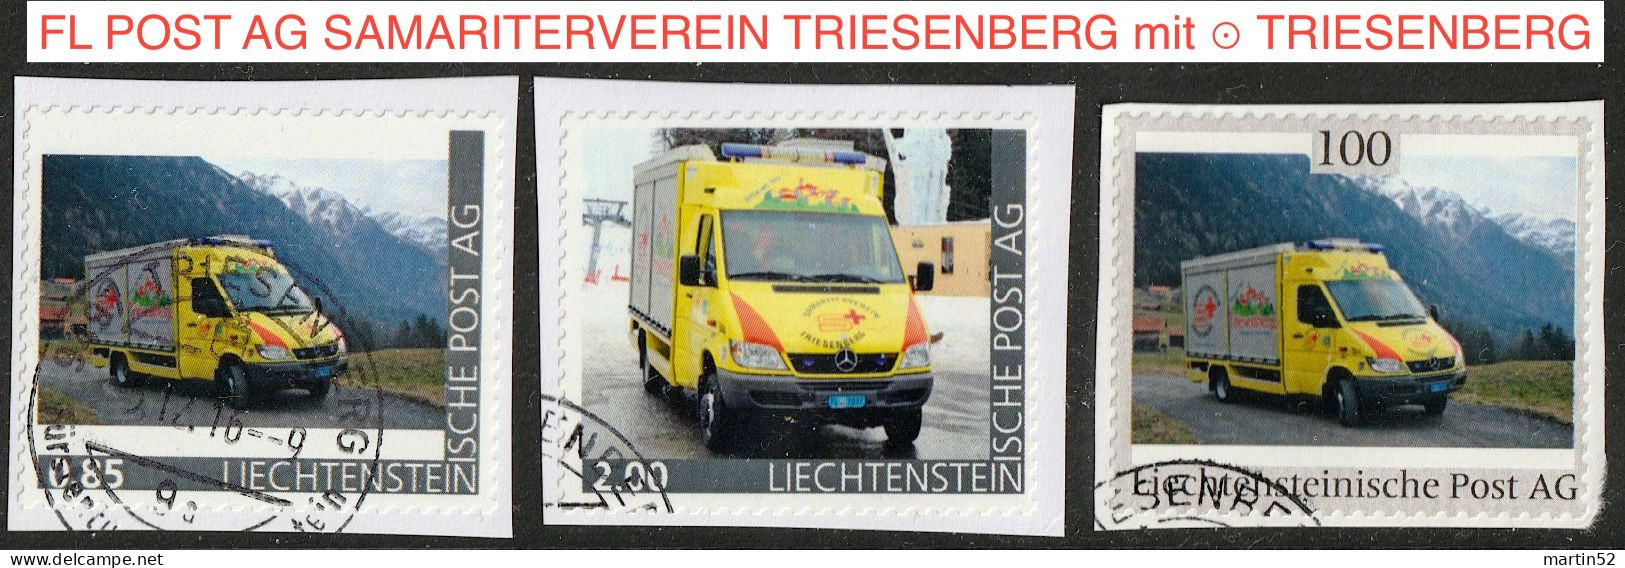 Liechtenstein 2016: Ausgabe Der FL POST AG "SAMARITERVEREIN TRIESENBERG" (Rettungs-Bus) Mit ⊙ Von TRIESENBERG - Errores & Curiosidades